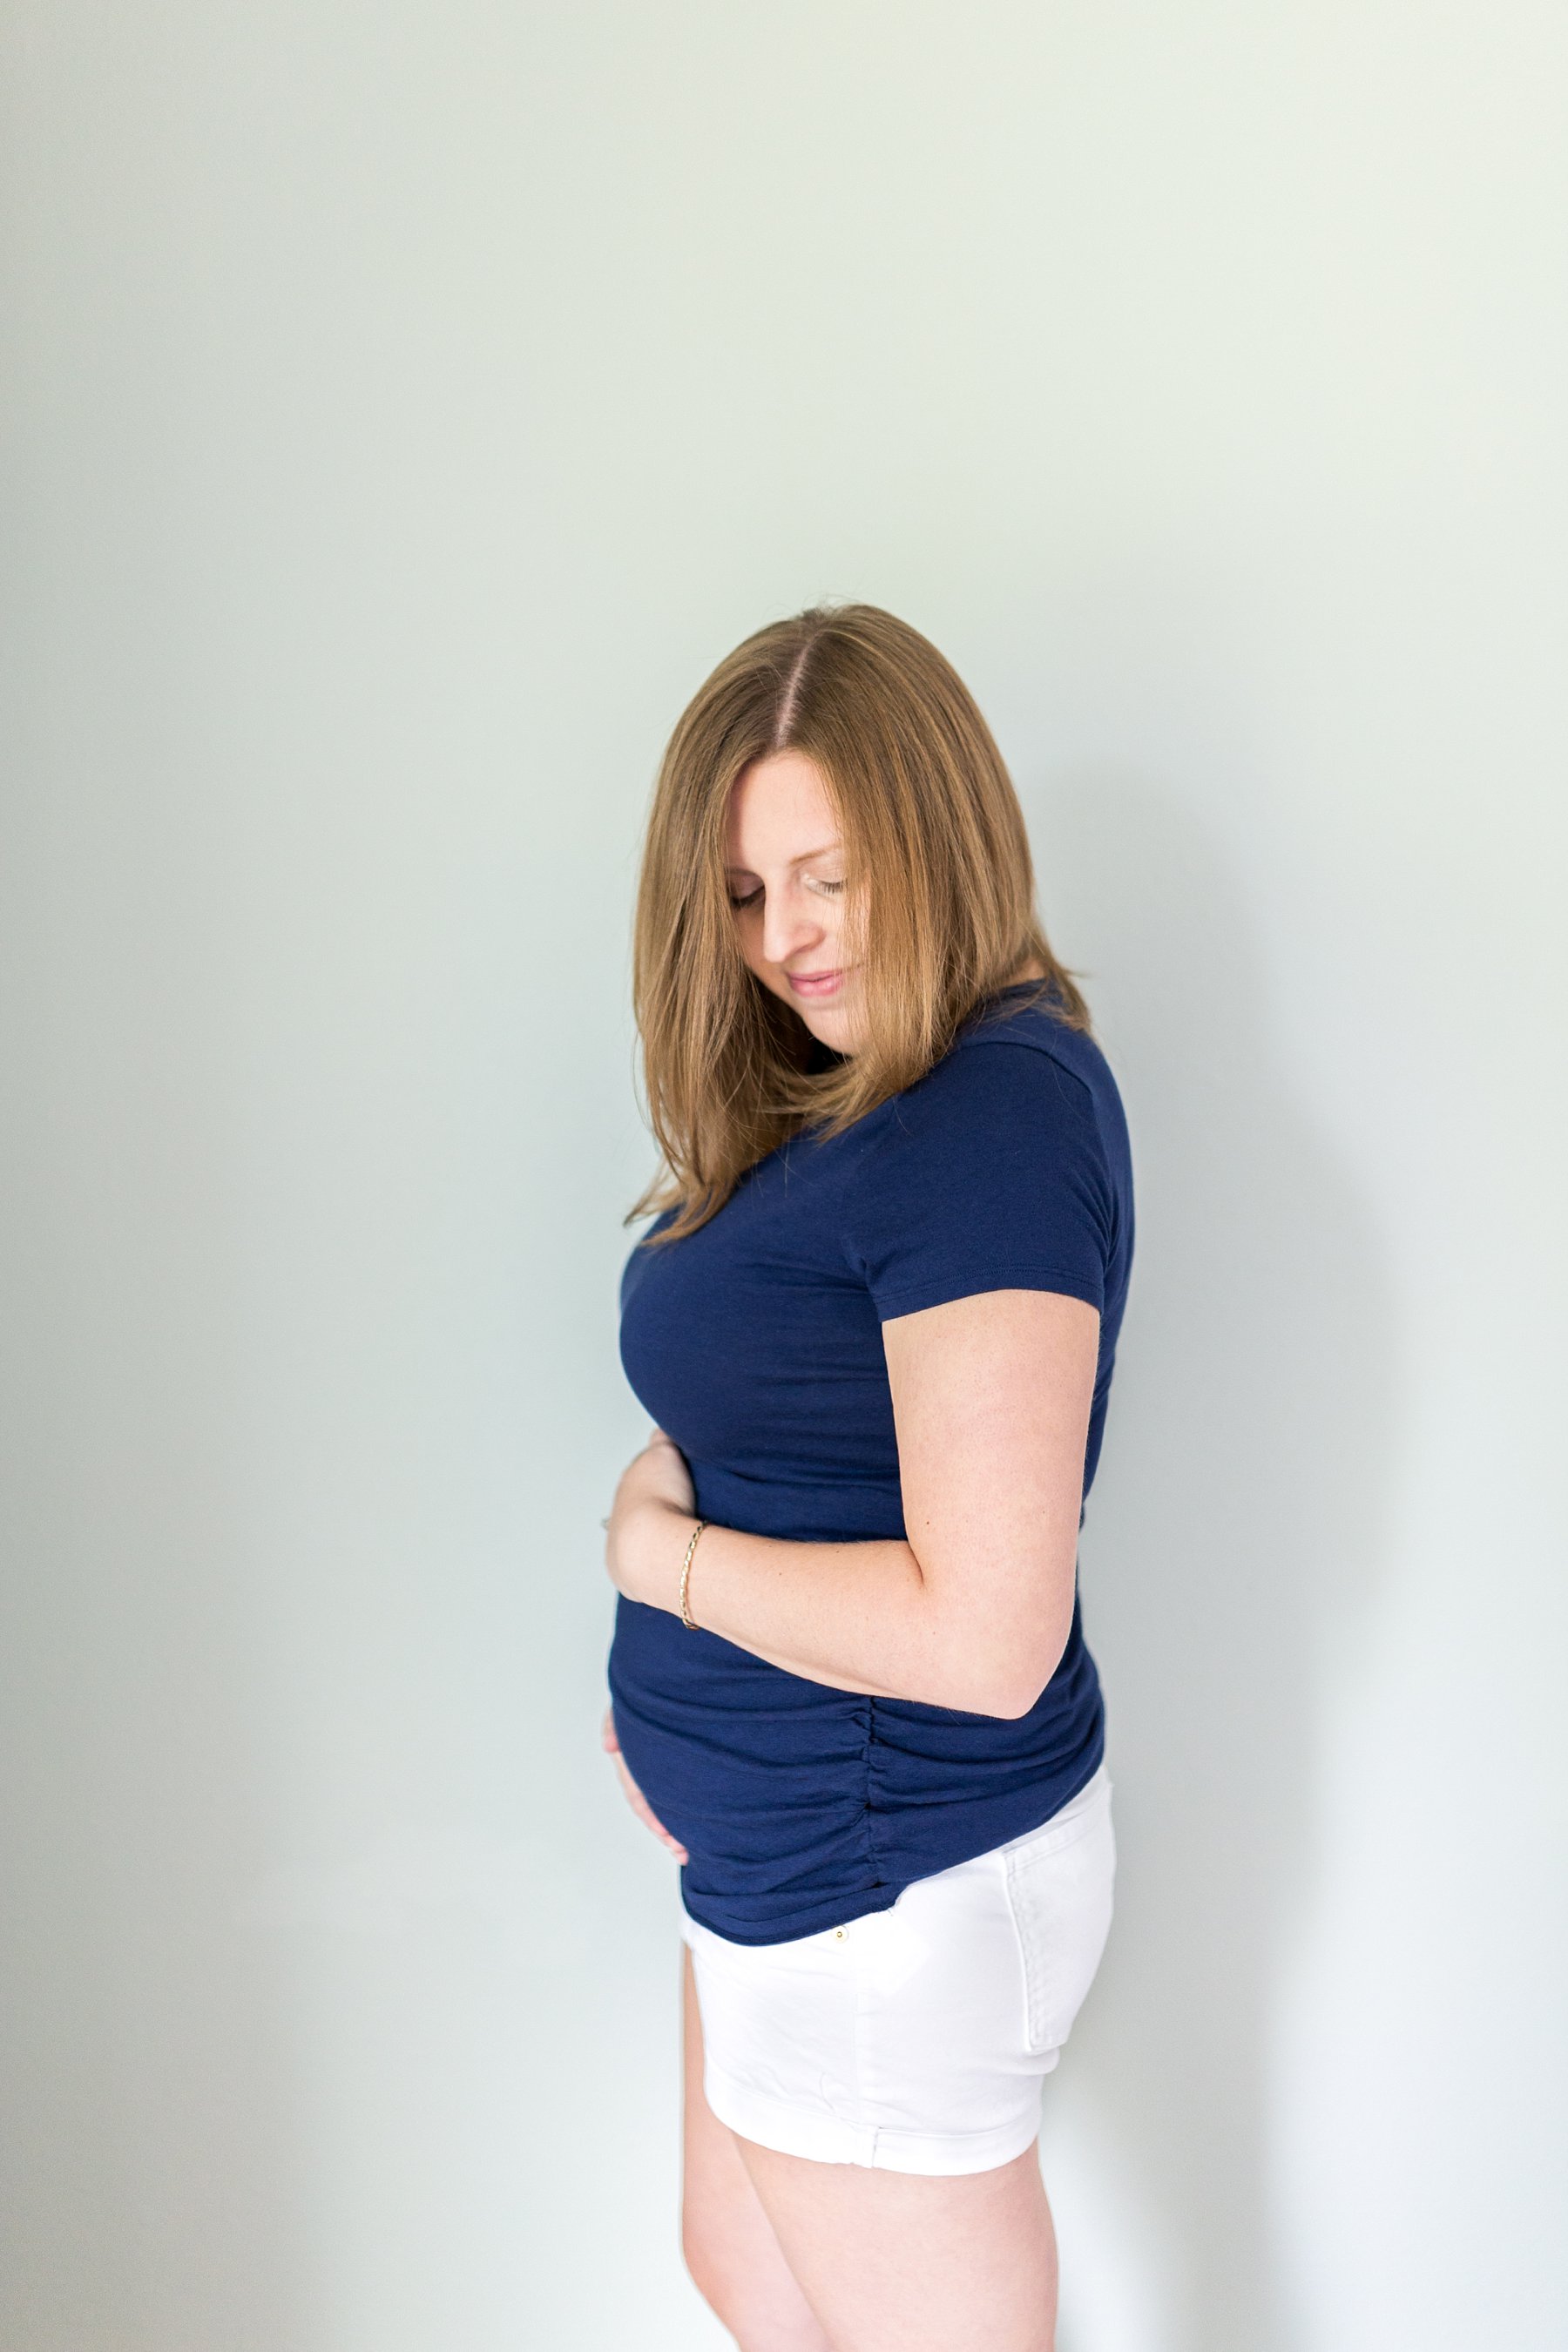 Cibene-Pregnancy-Announcement